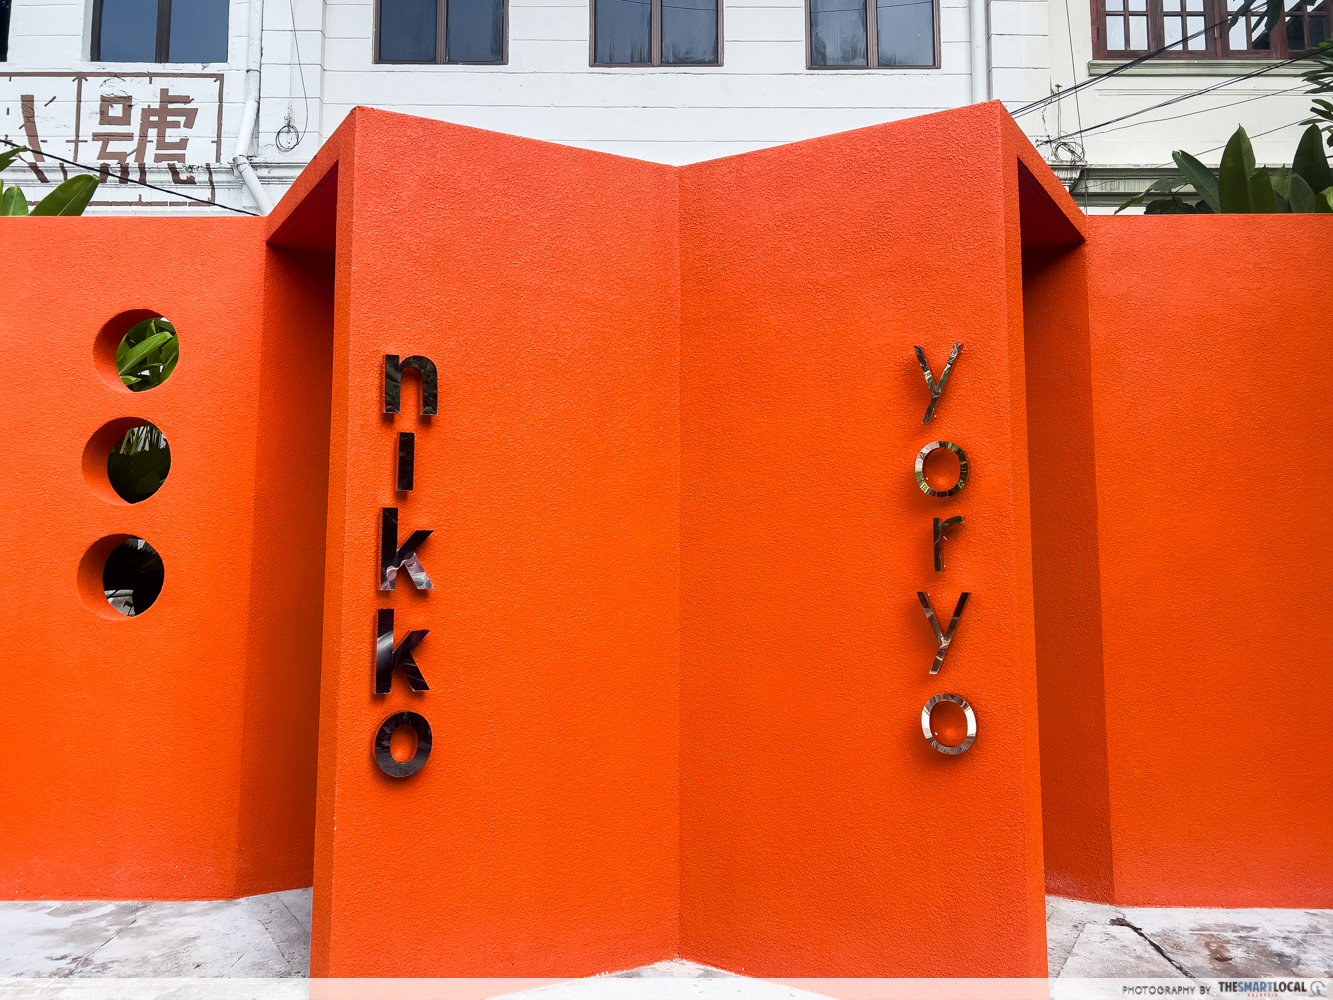 Nikko & Yoryo - orange wall